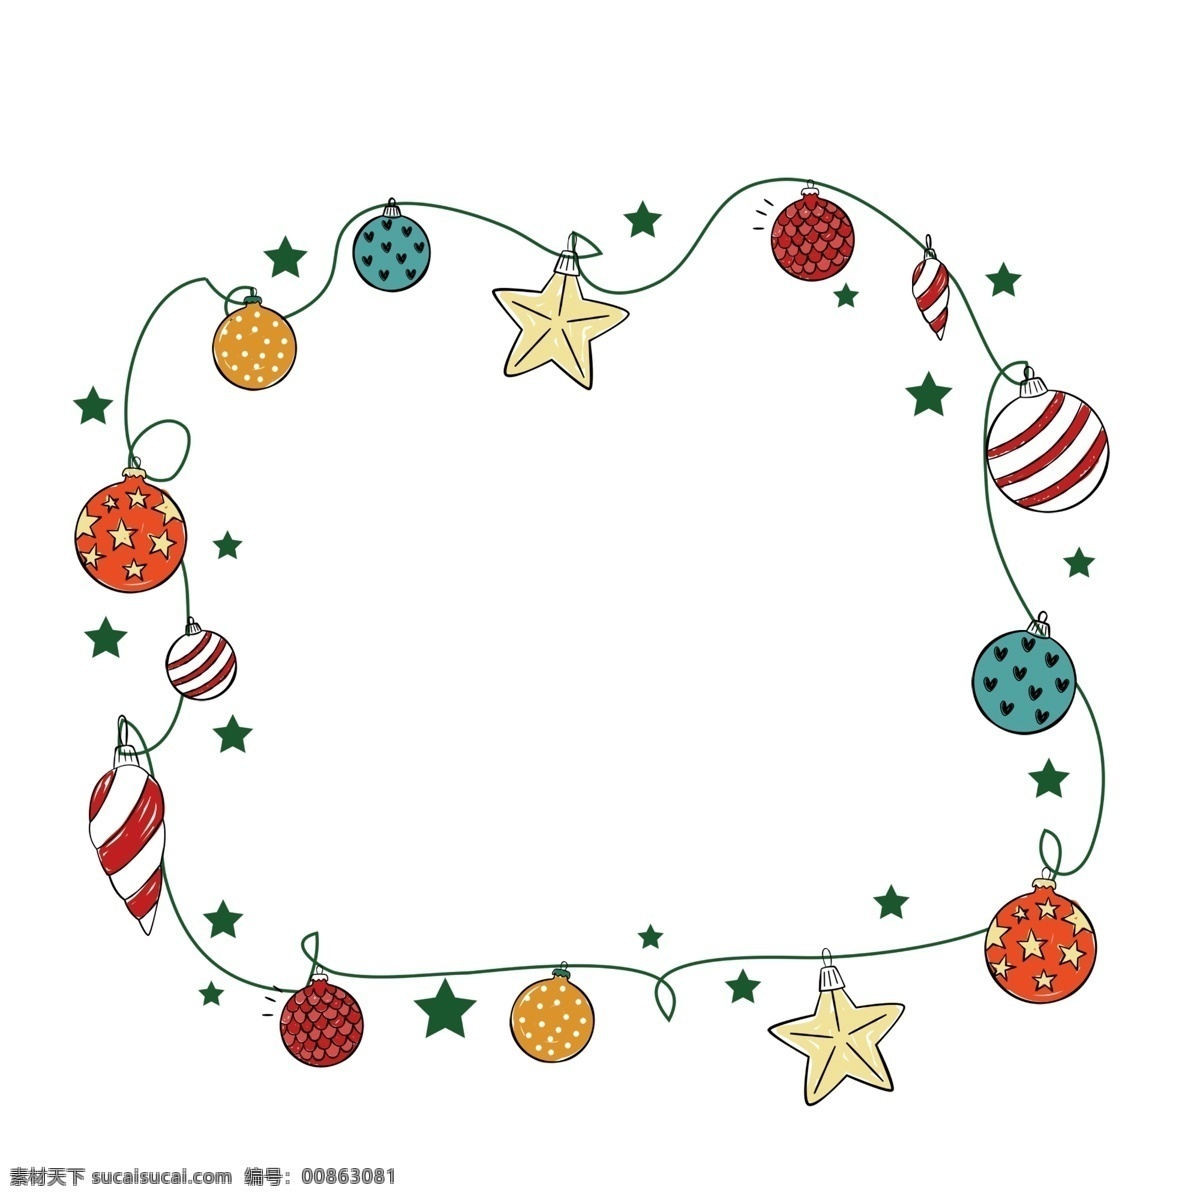 圣诞节 彩球 边框 插画 圣诞节边框 彩球边框插画 圣诞彩球 圣诞球 手绘卡通边框 黄色的五角星 绿色 小星星